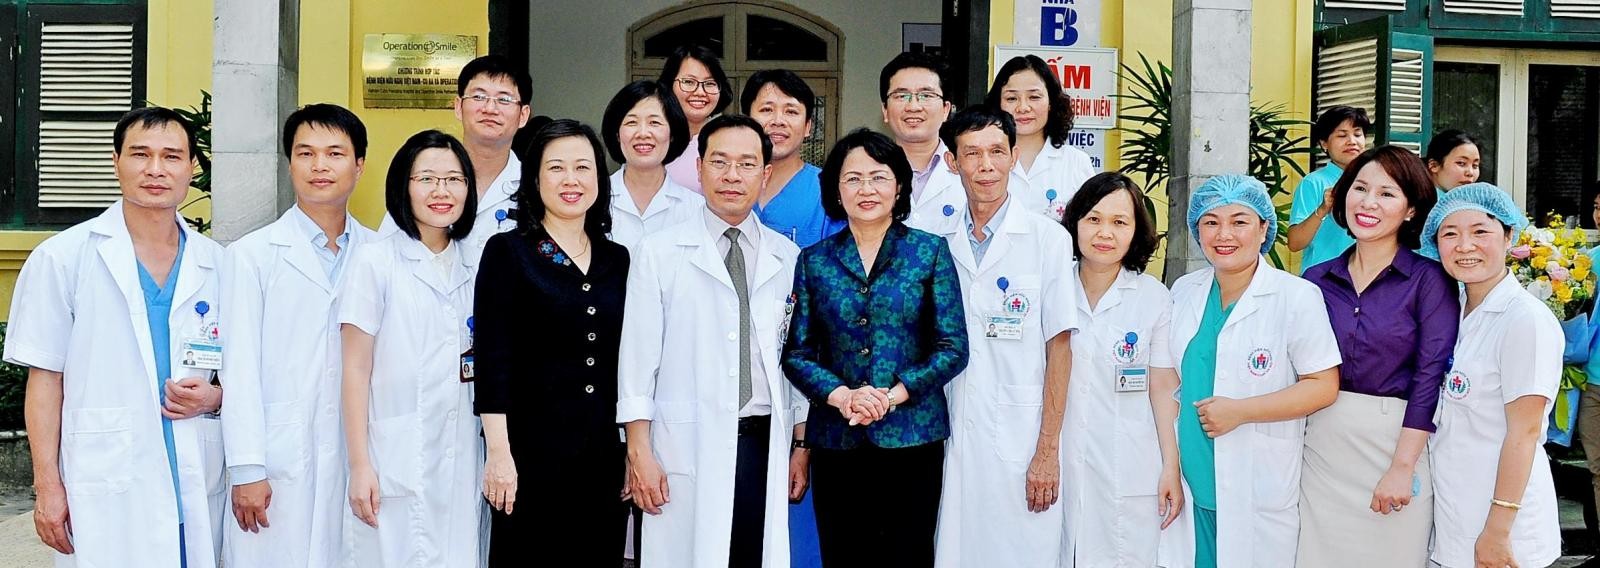 Bệnh viện Việt Nam - Cu Ba